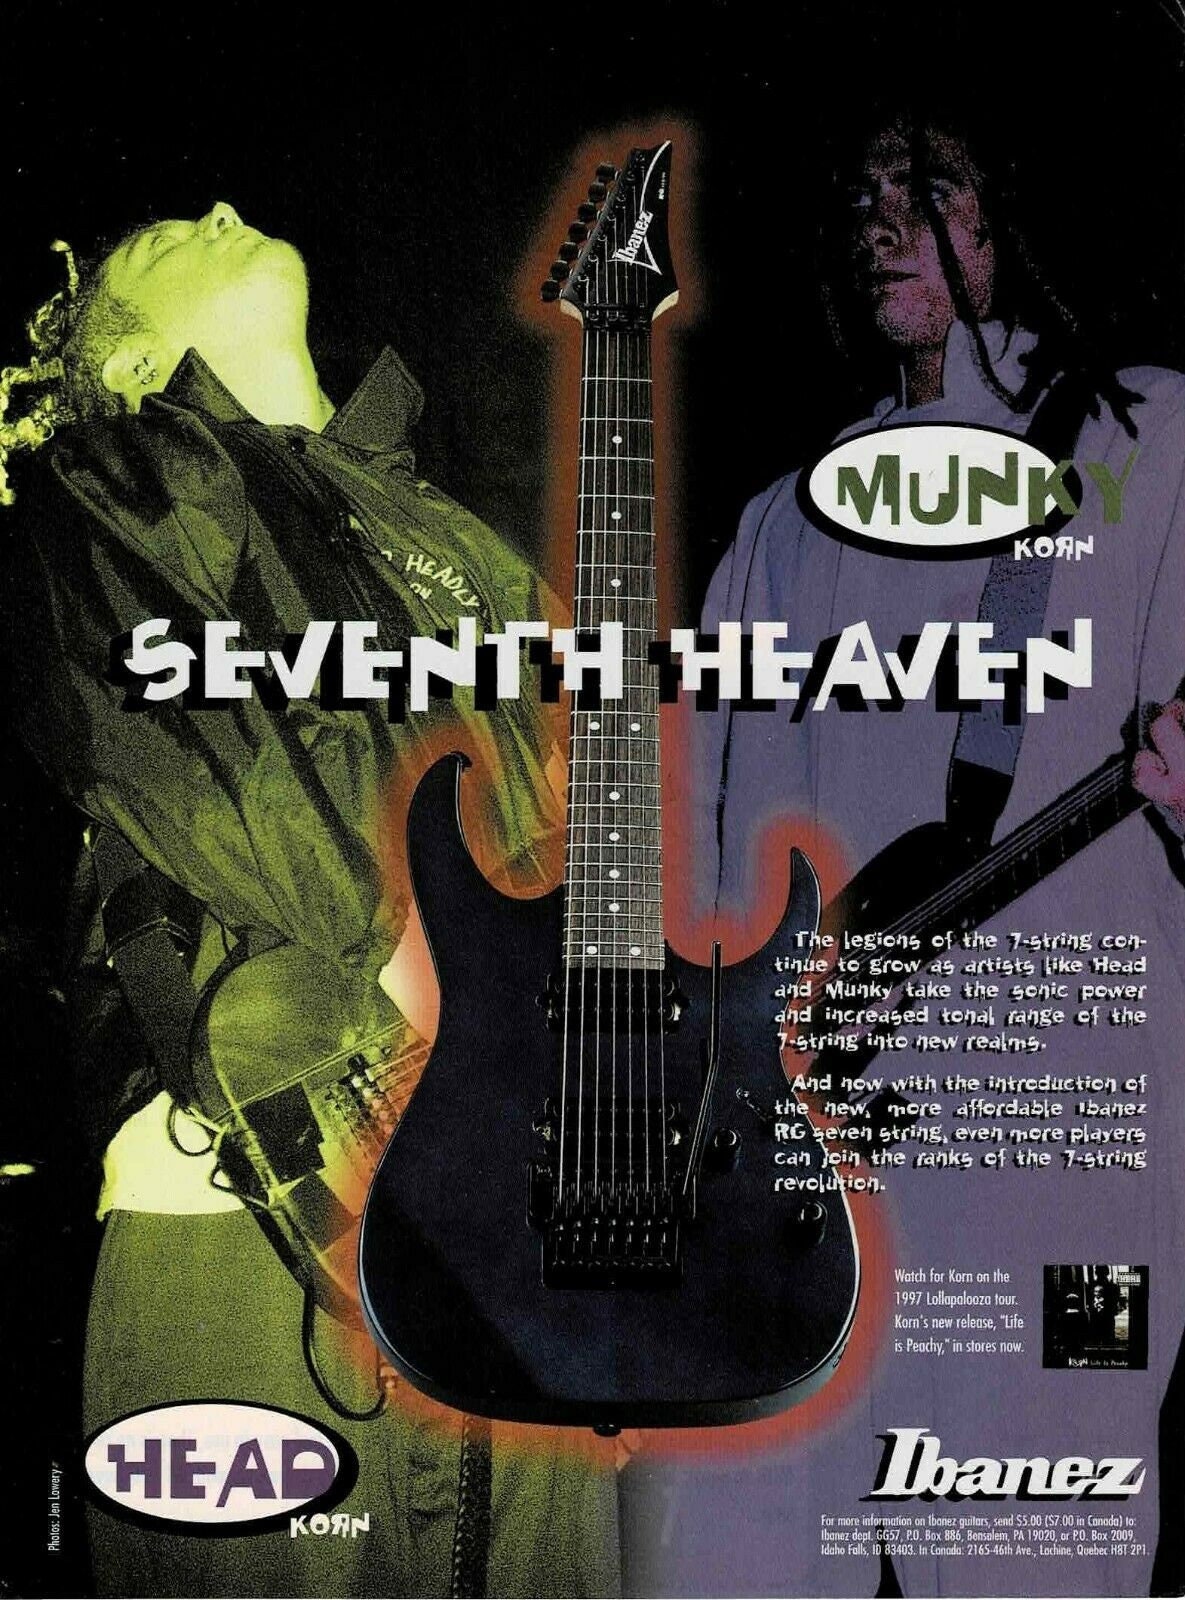 Head & Munky of Korn Ibanez Guitars 1997 Print Ad - Etsy Israel